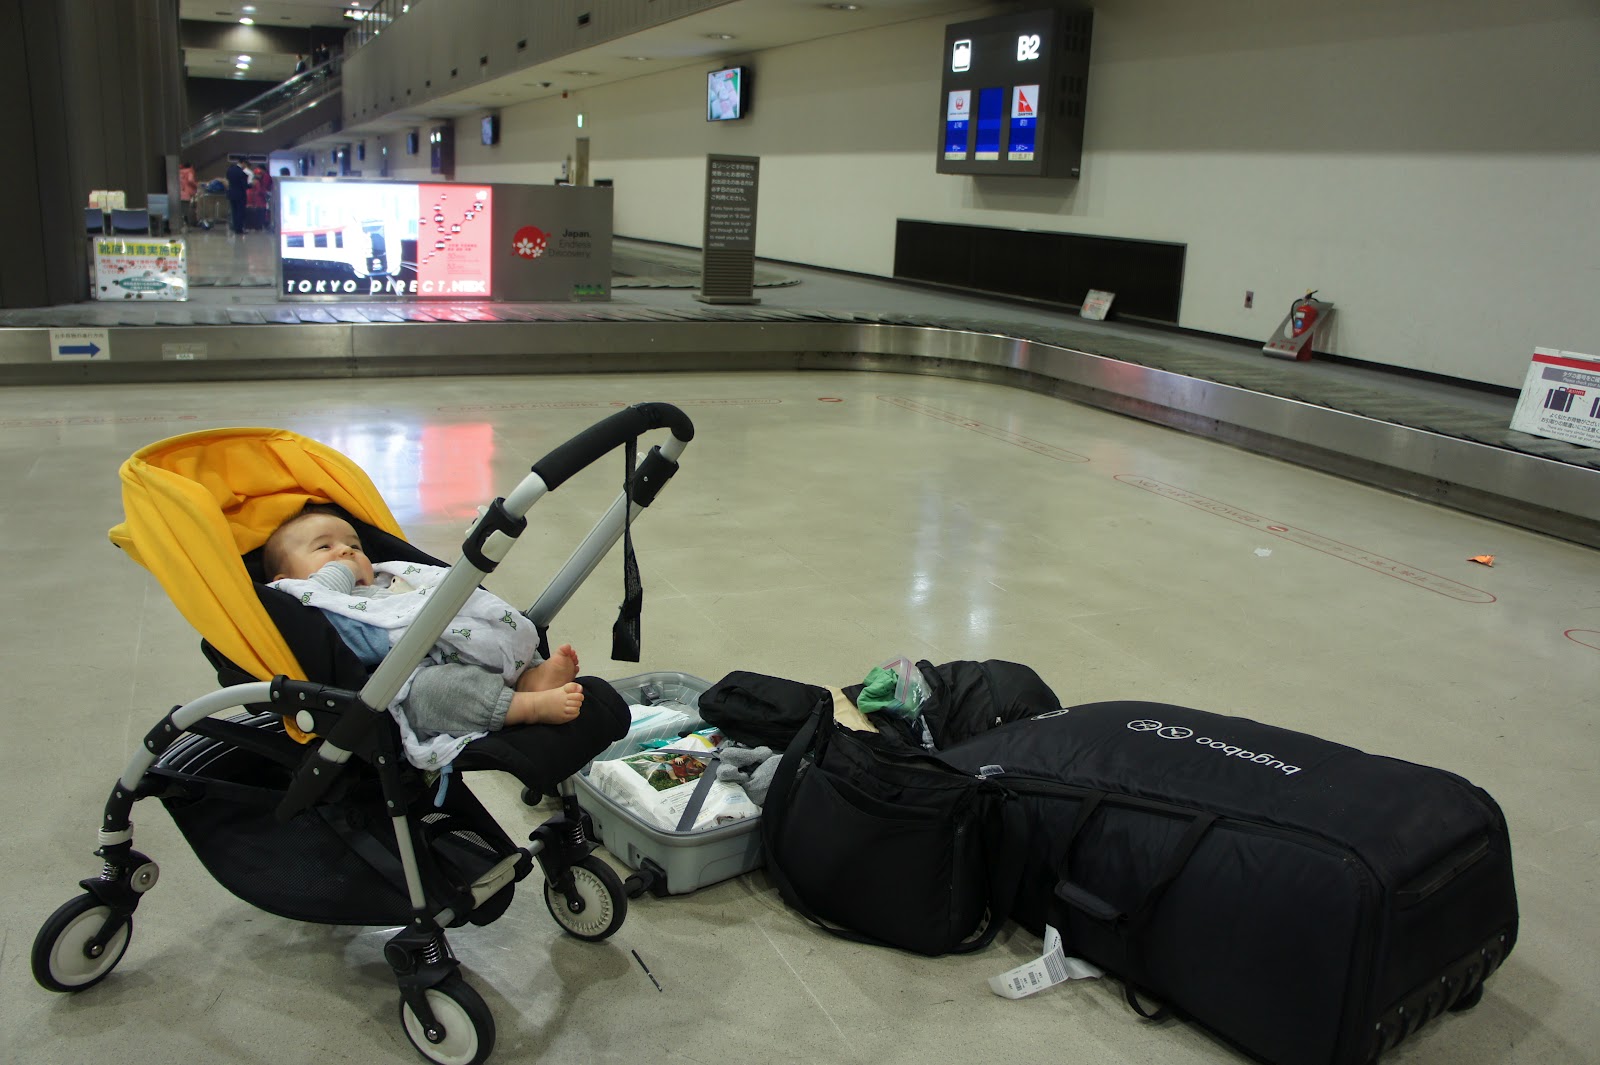 Как провозить коляску в самолете: когда можно летать с новорожденным ребенком, специальные гамак и люлька для полетов